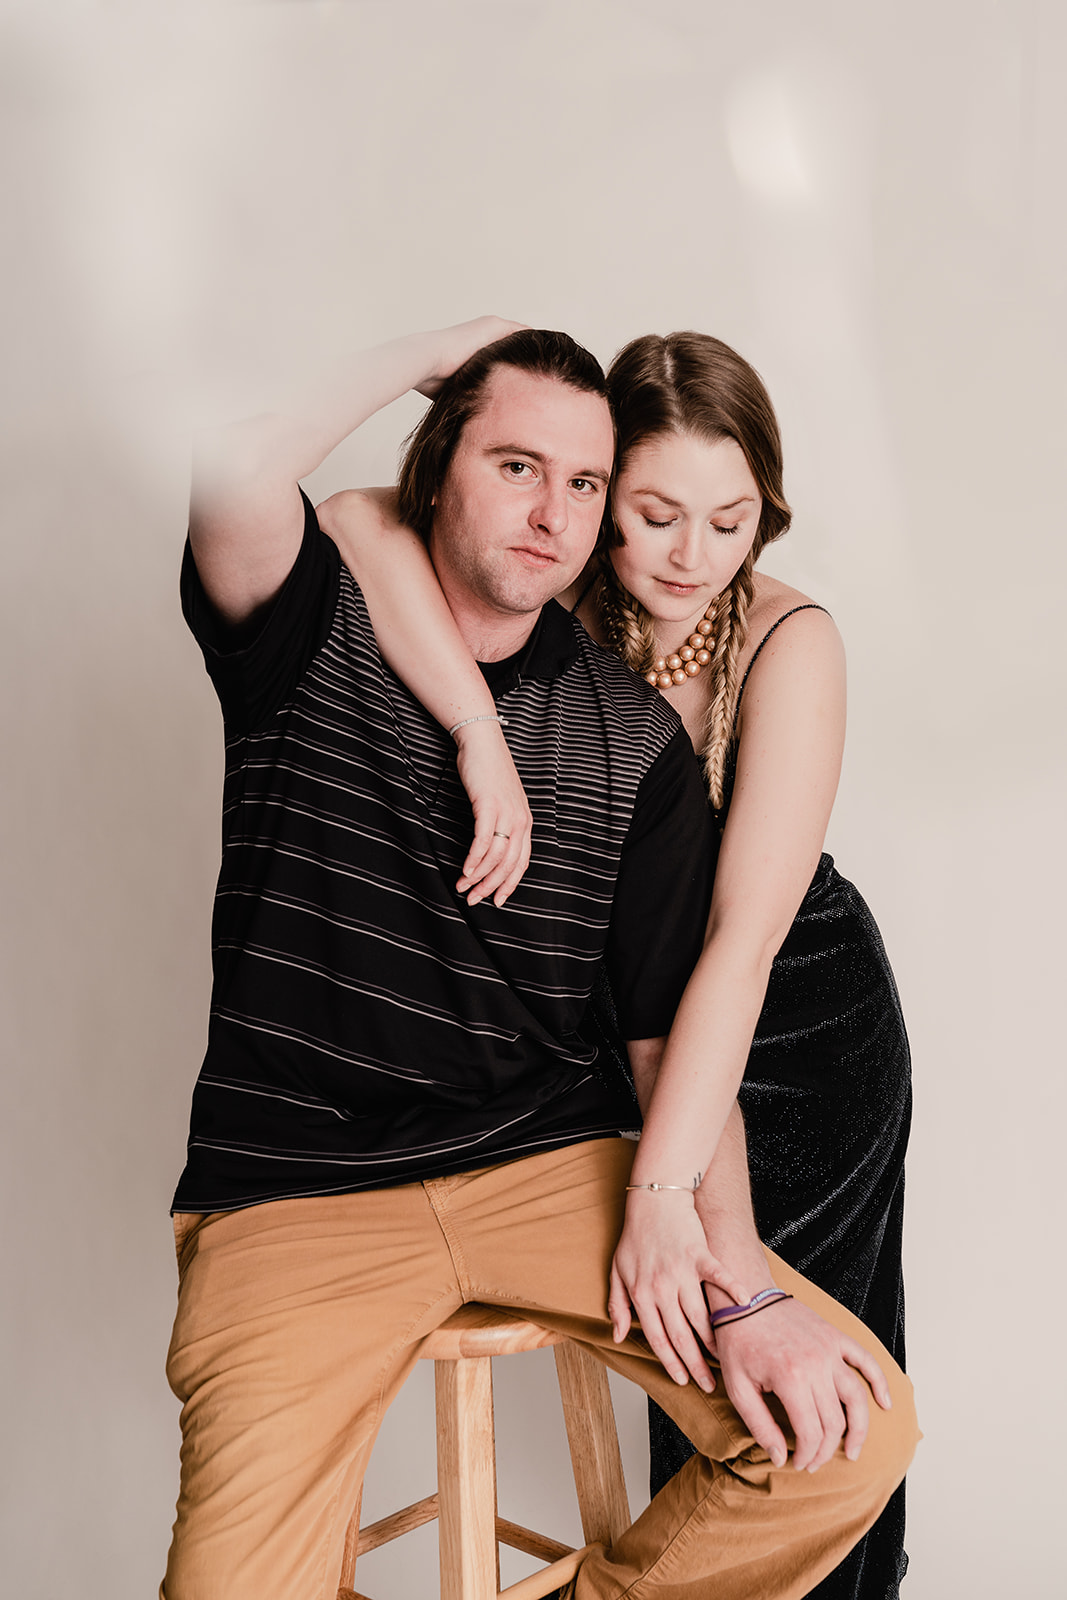 classy couple's studio photoshoot